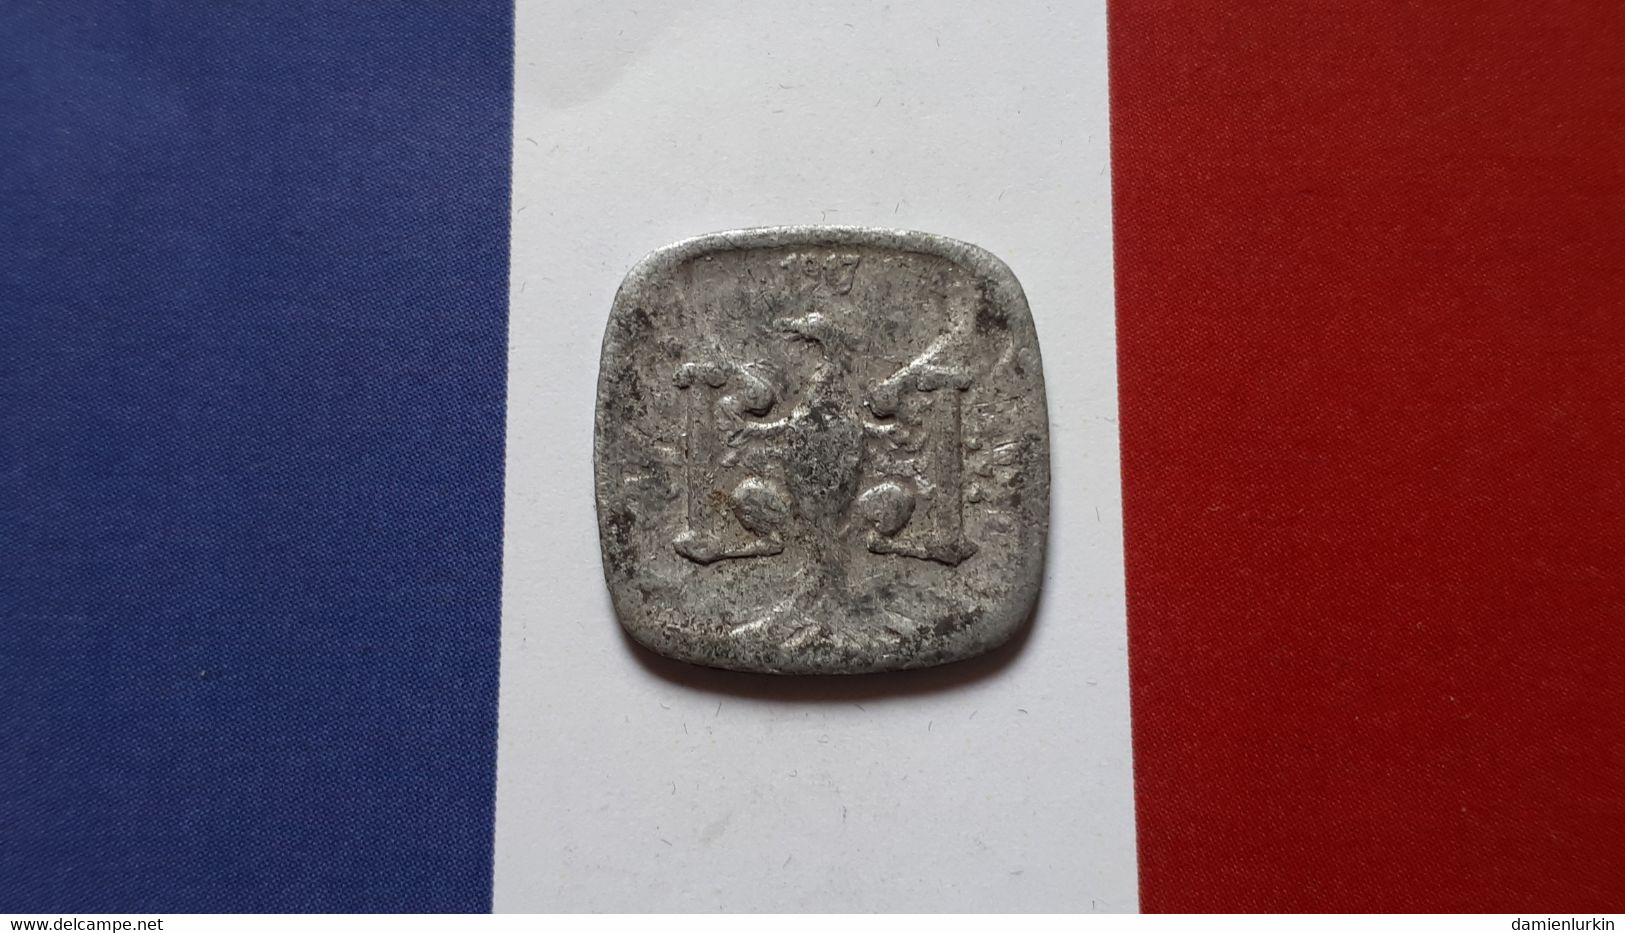 FRANCE BESANCON 5 CENTIMES NECESSITE 1917 FRAPPE MEDAILLE - Monétaires / De Nécessité